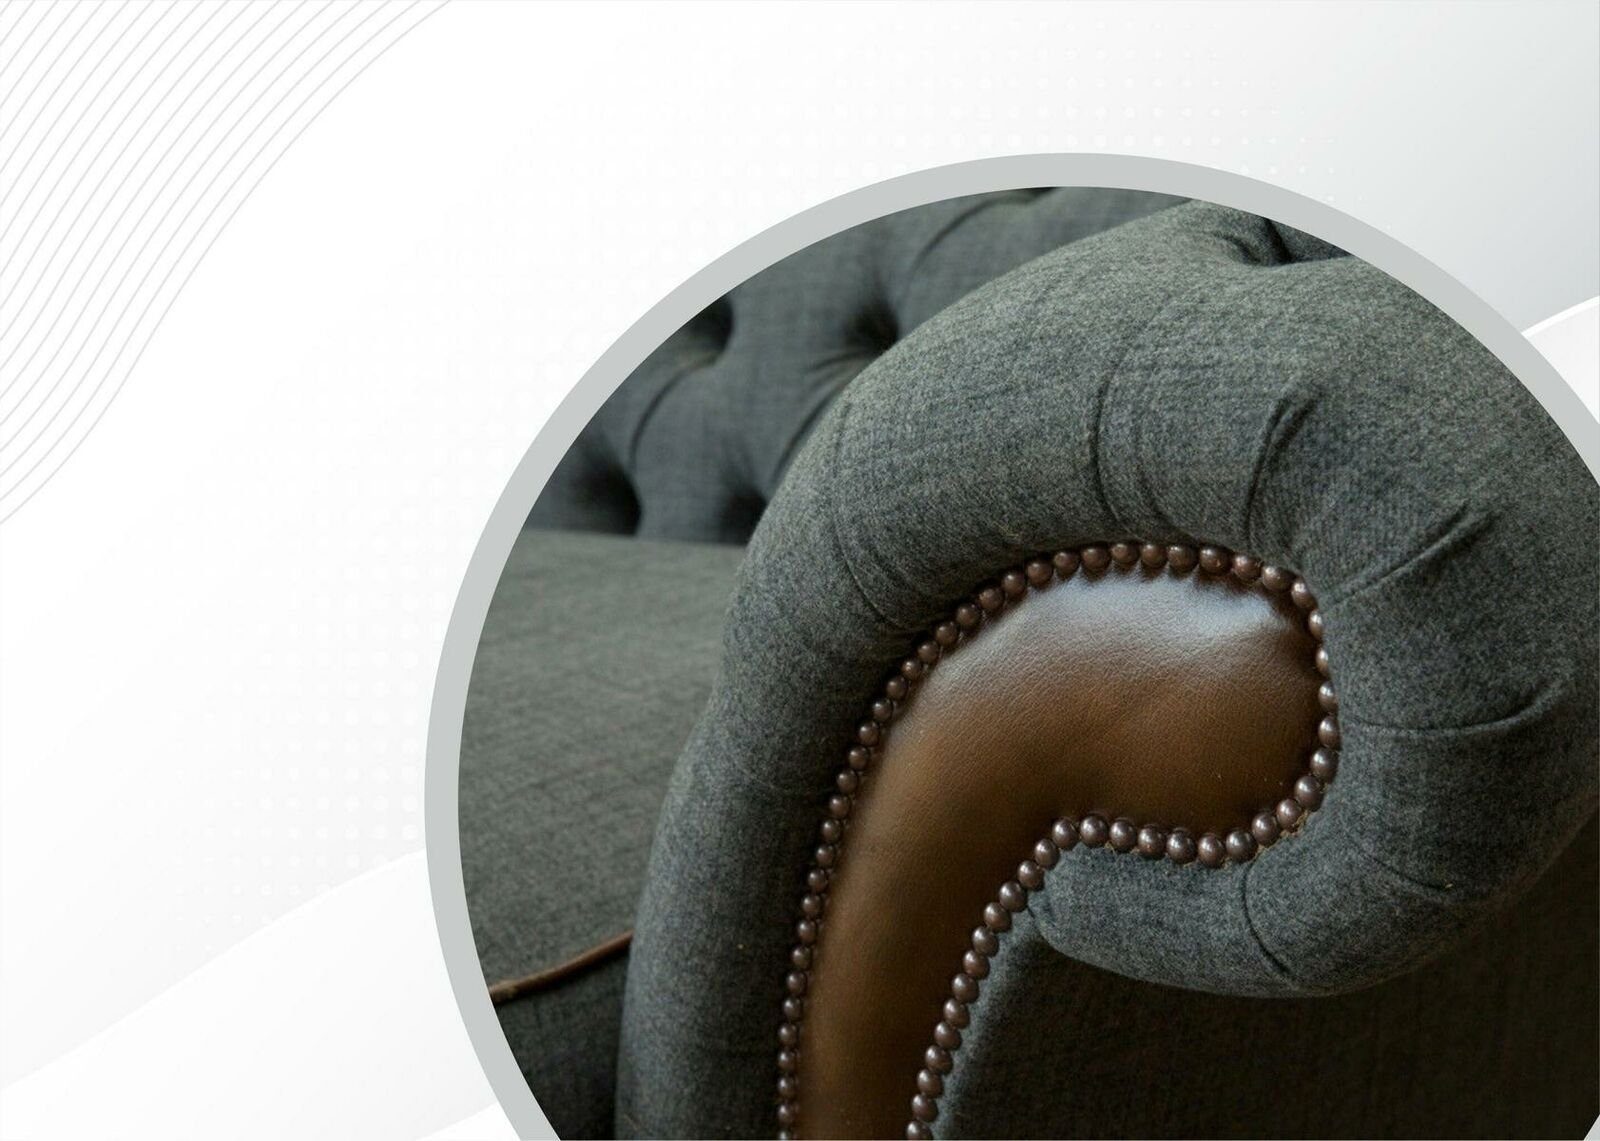 Made Design 4-Sitzer Polstermöbel Grauer Chesterfield luxus JVmoebel Chesterfield-Sofa Neu, Europe in